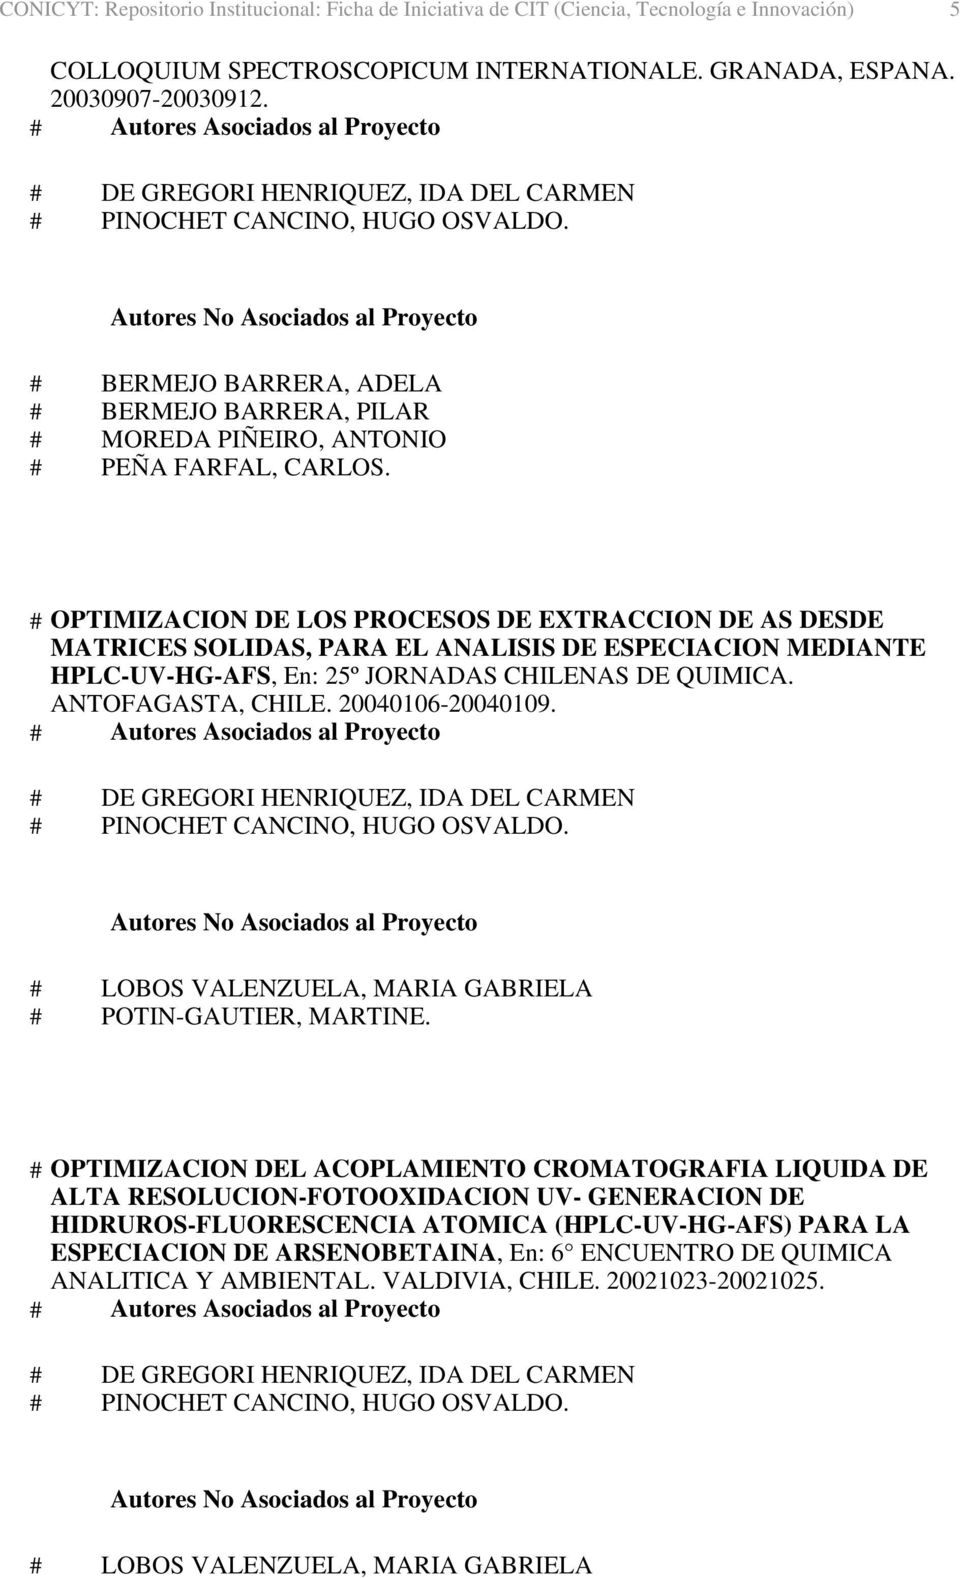 MEDIANTE HPLC-UV-HG-AFS, En: 25º JORNADAS CHILENAS DE QUIMICA. ANTOFAGASTA, CHILE. 20040106-20040109.